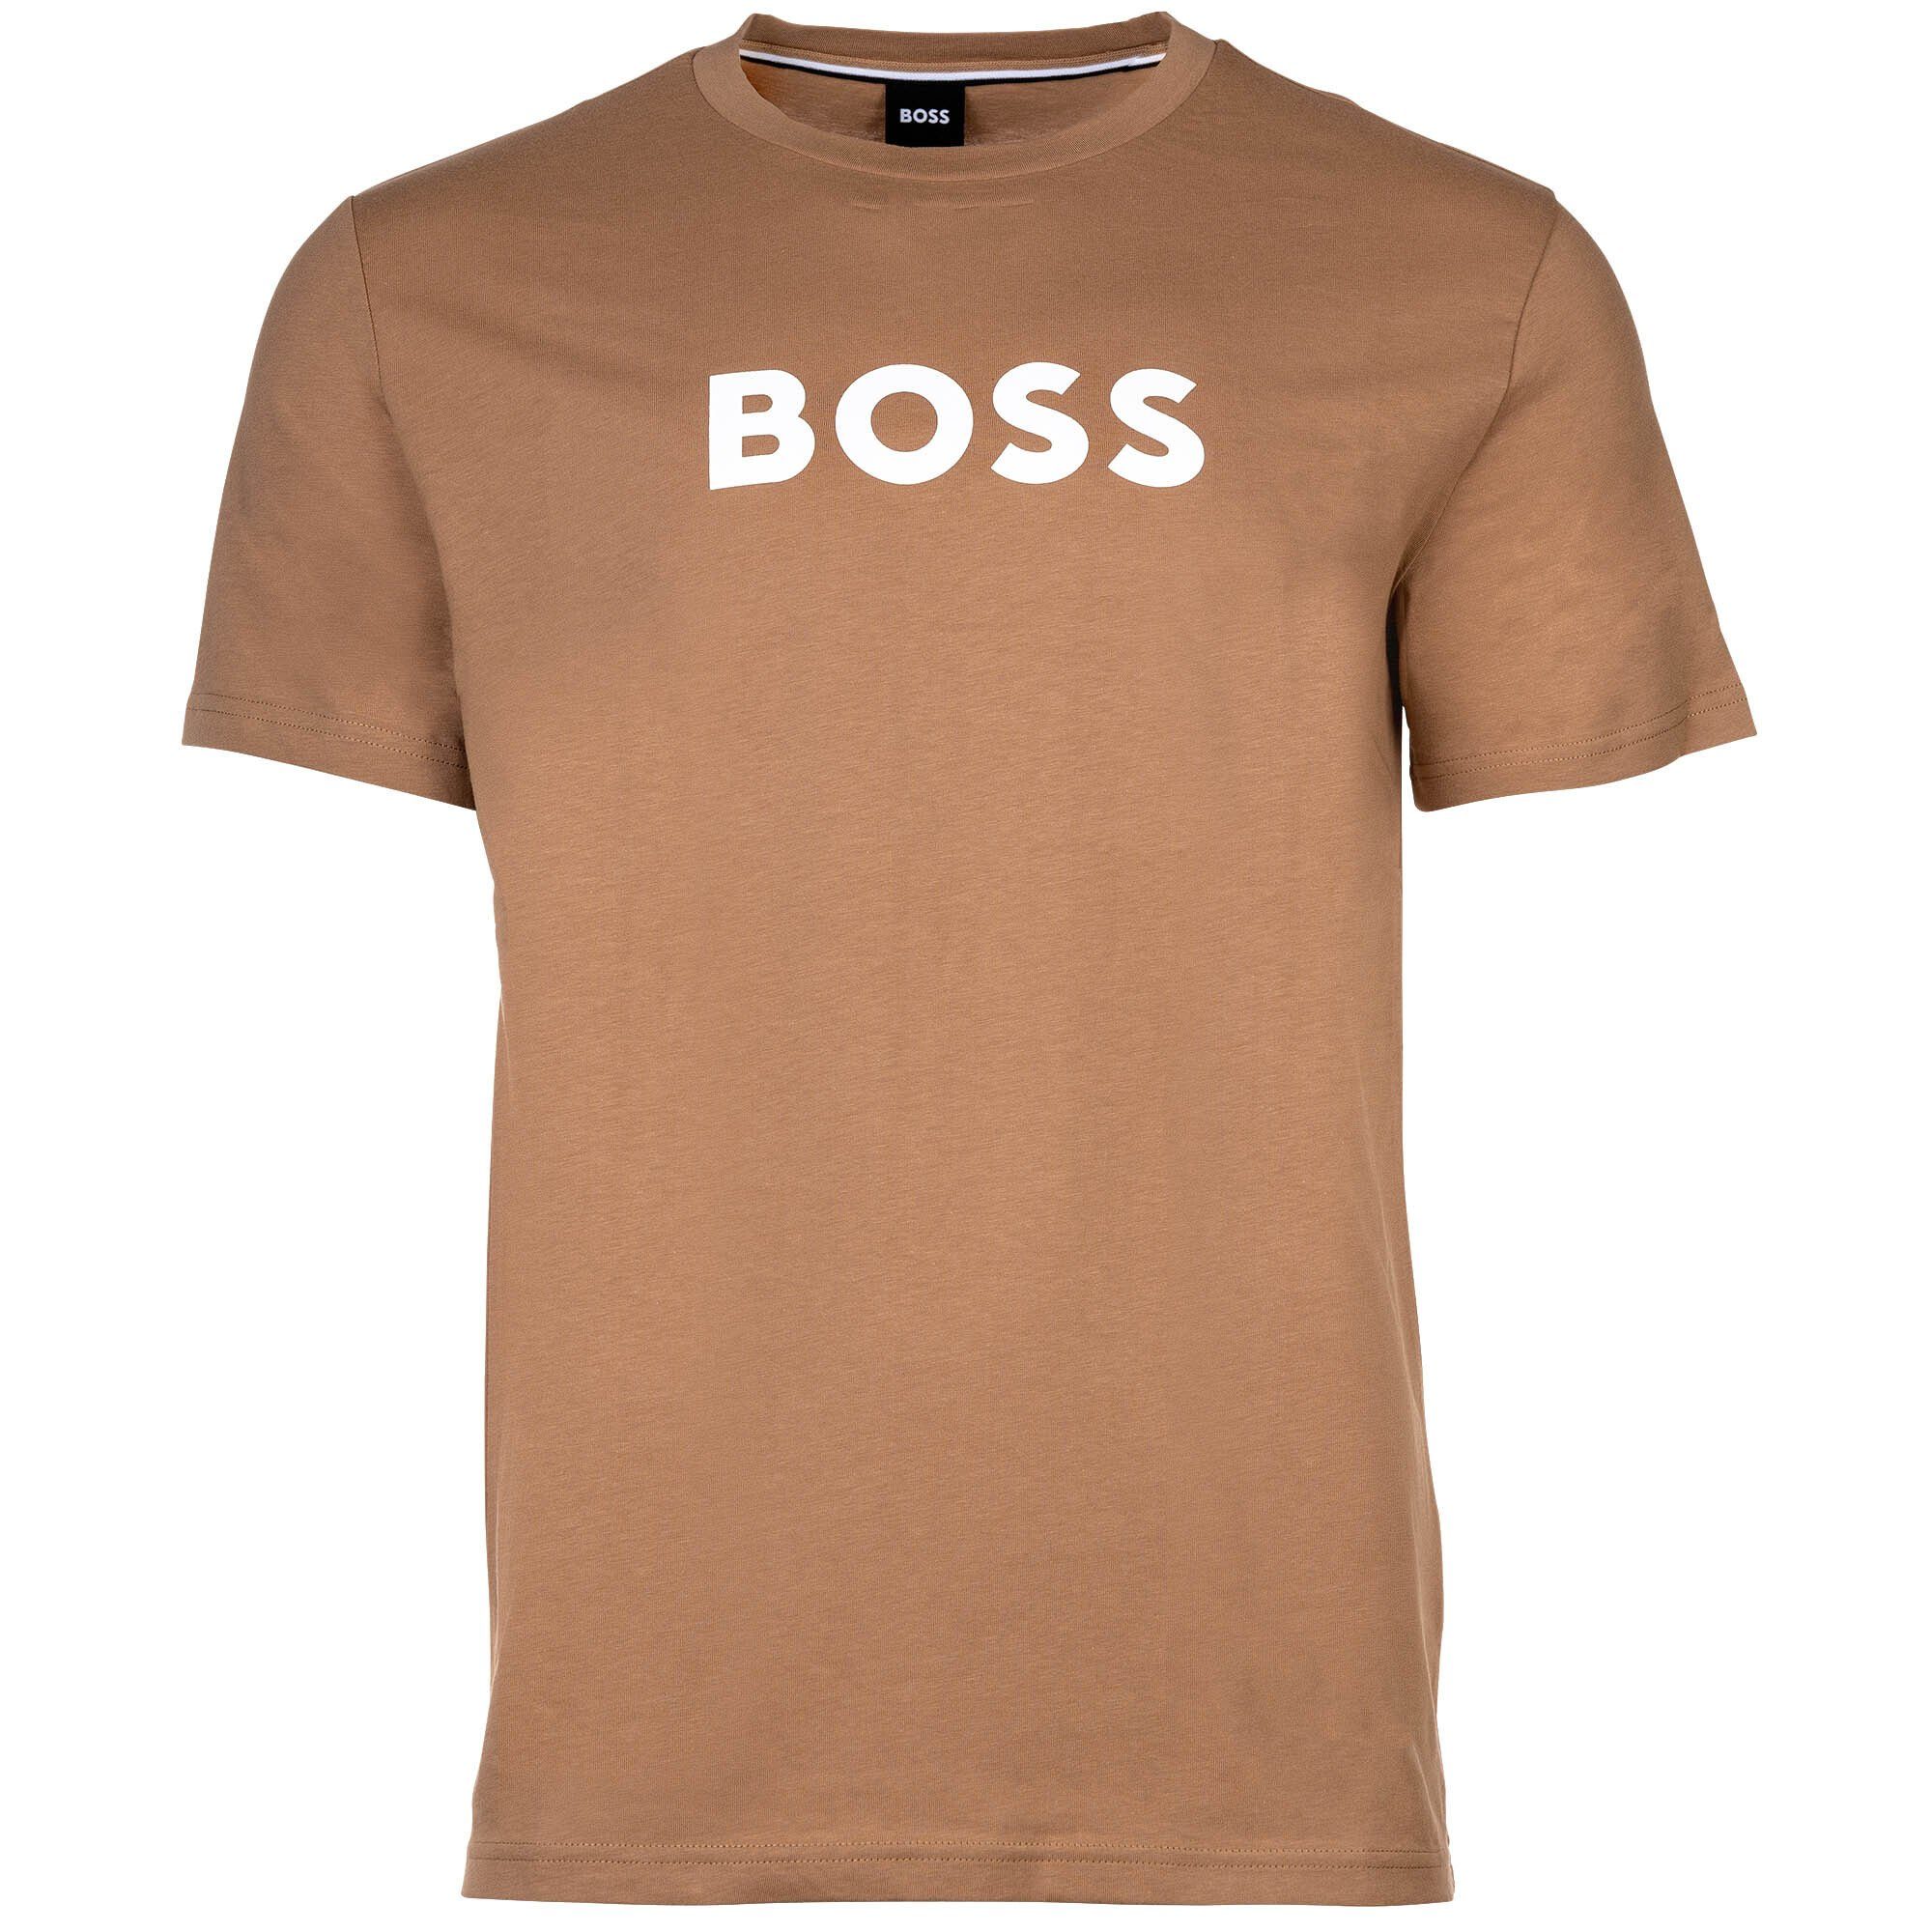 Kurzarm T-Shirt BOSS - Beige Herren T-Shirt RN, Rundhals, T-Shirt